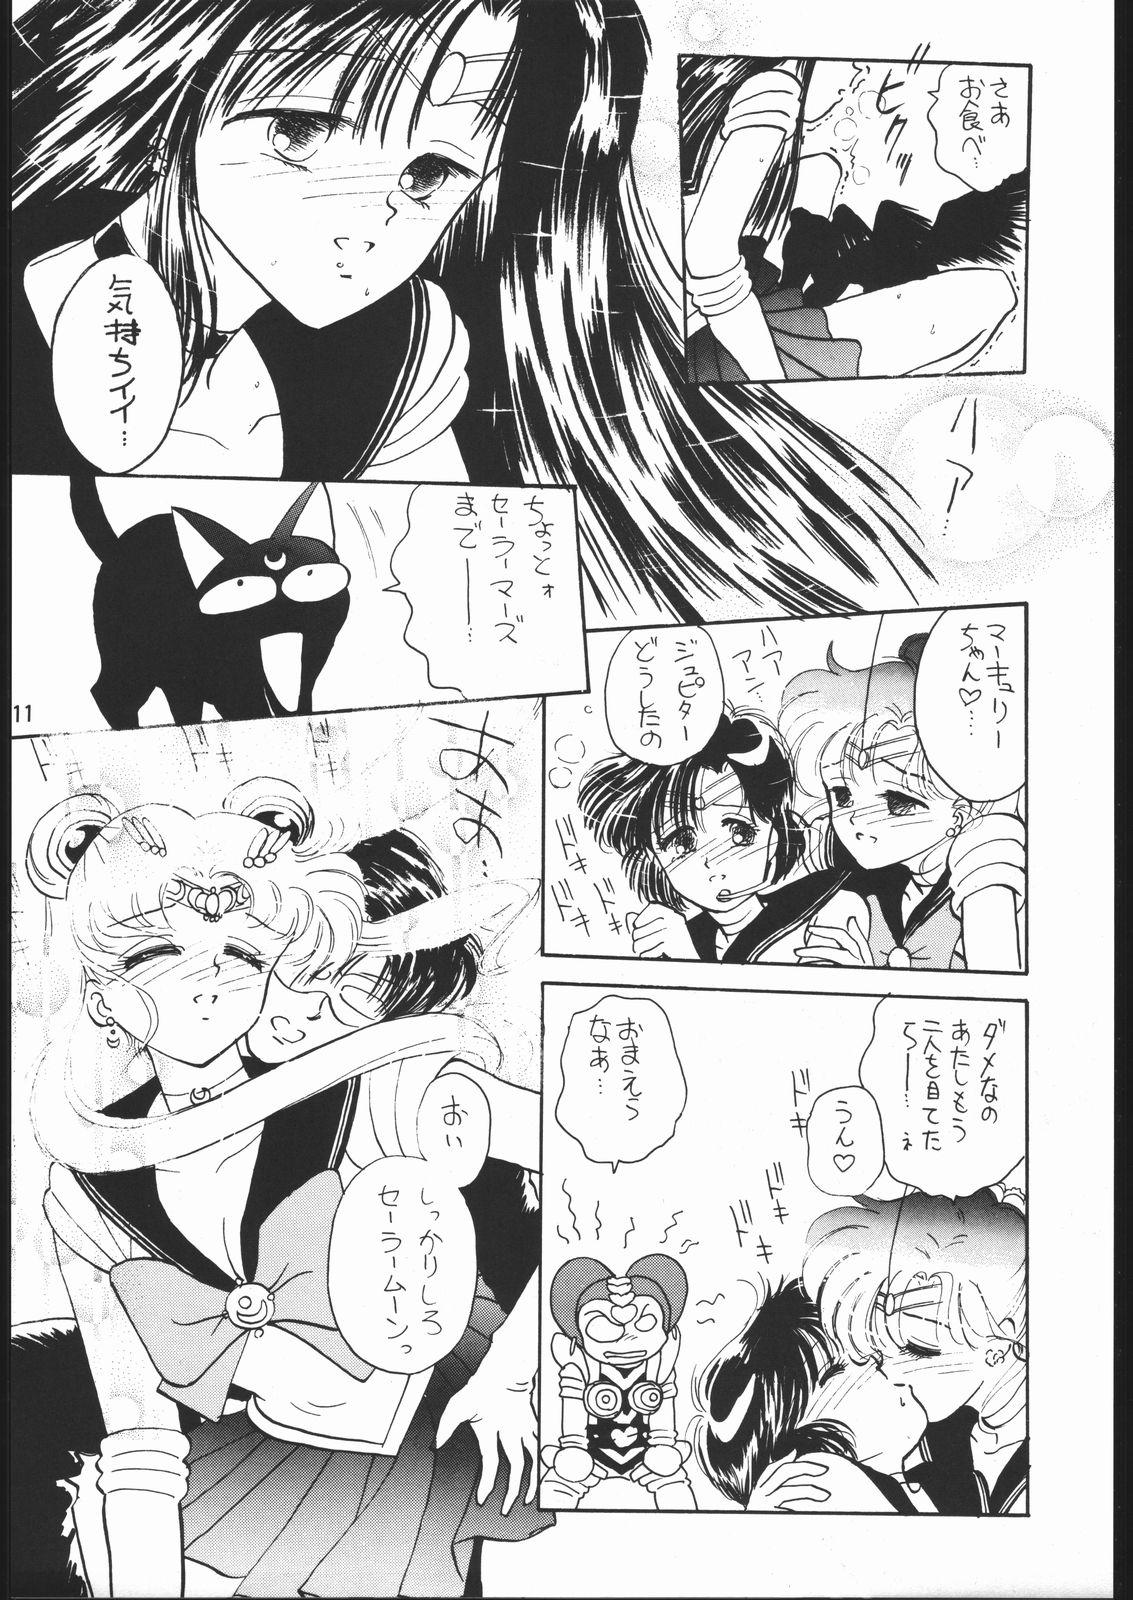 Hindi うさぎがピョン!! - Sailor moon Teen Porn - Page 10